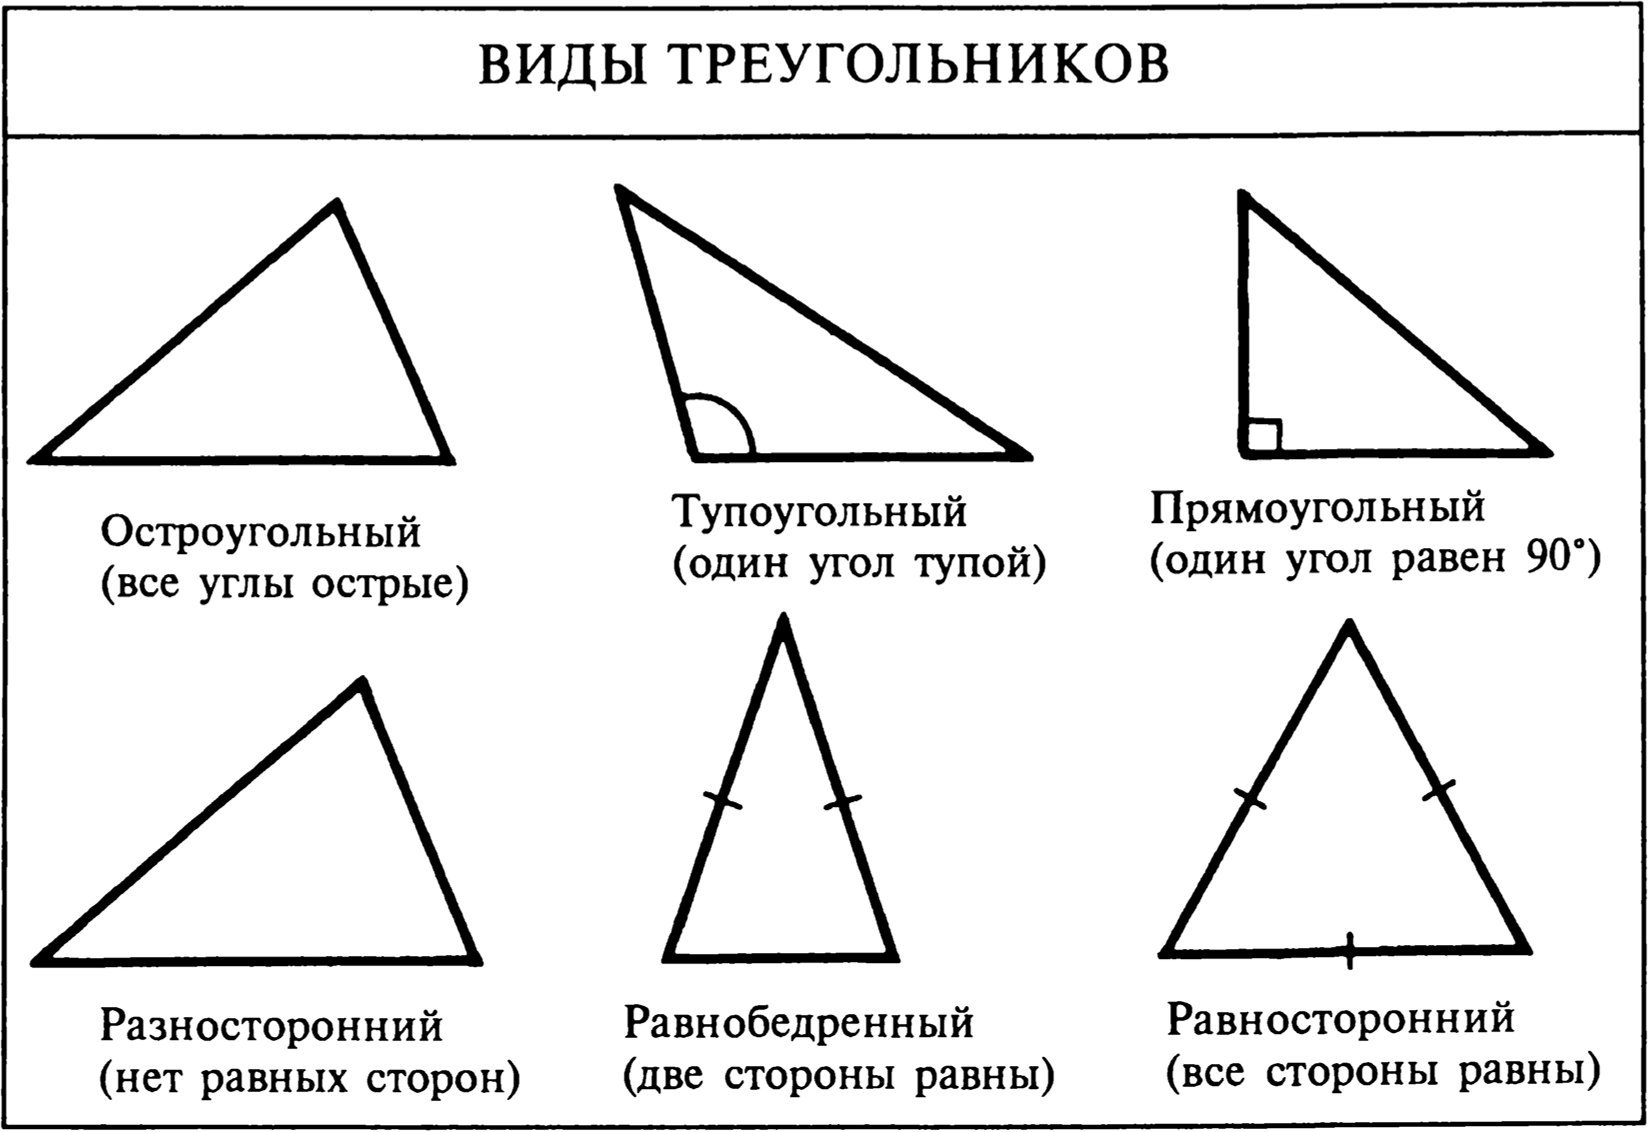 Может ли тупоугольный треугольник быть равнобедренным. Какие виды треугольников бывают. Виды треугольников по углам и сторонам. Треугольники виды треугольников. Равнобедренный тупоугольный треугольник.